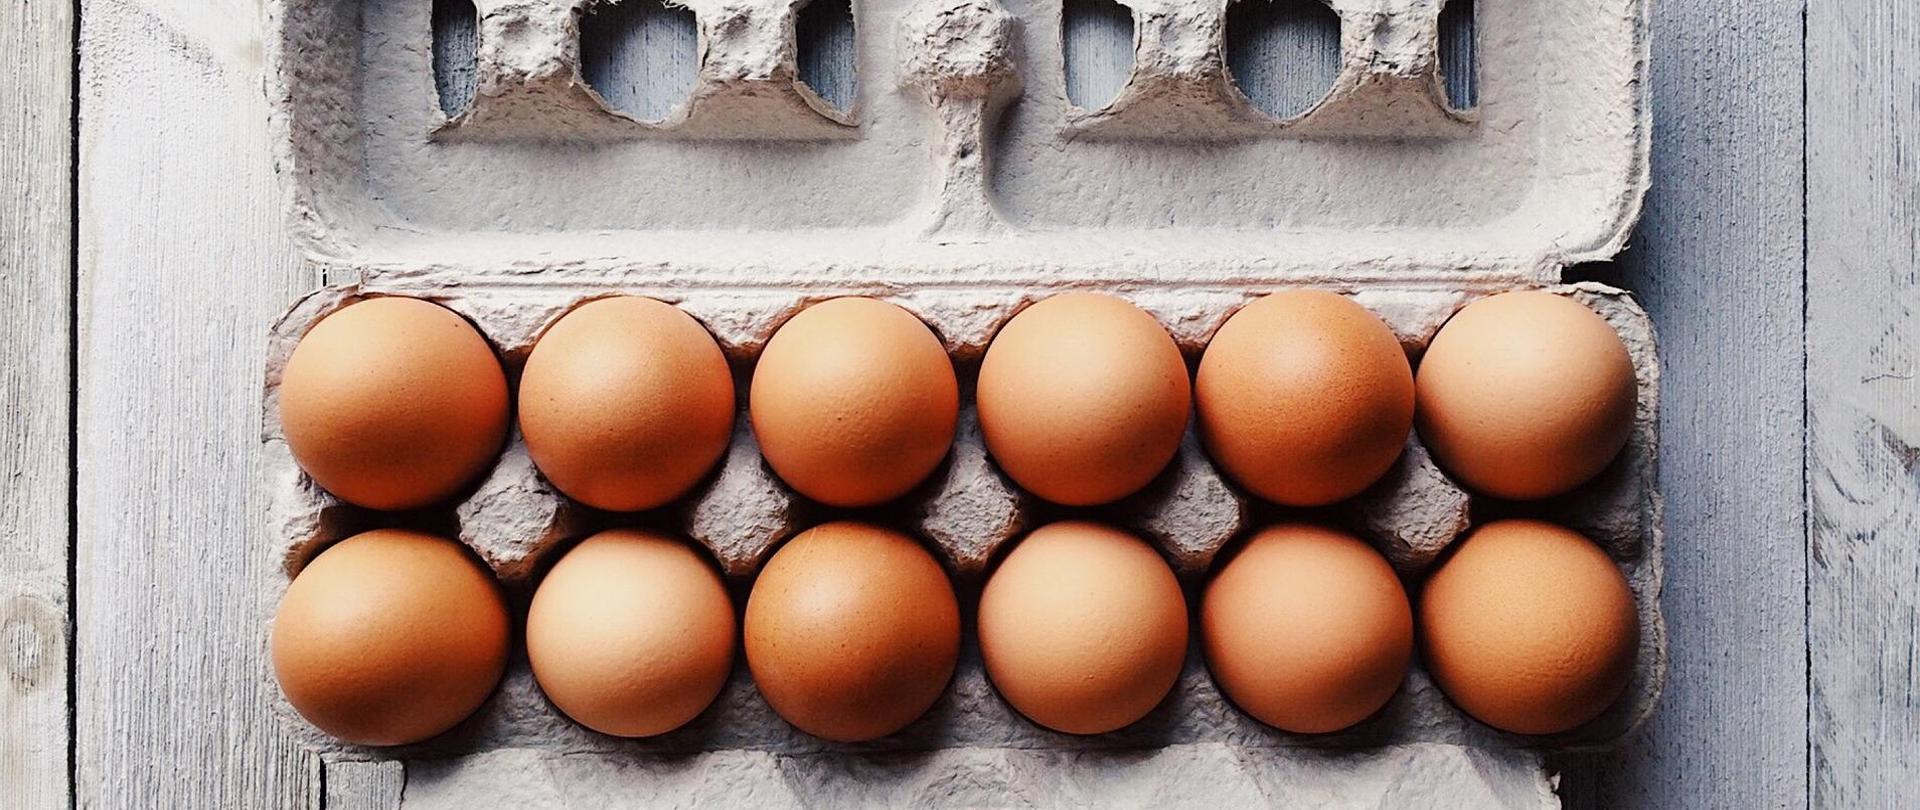 Na zdjęciu znajduje się otwarta tekturowa wytłoczka z dwunastoma świeżymi jajami. Wytłoczka jest na drewnianych deskach. Widok na wytłoczkę i jaja z góry.